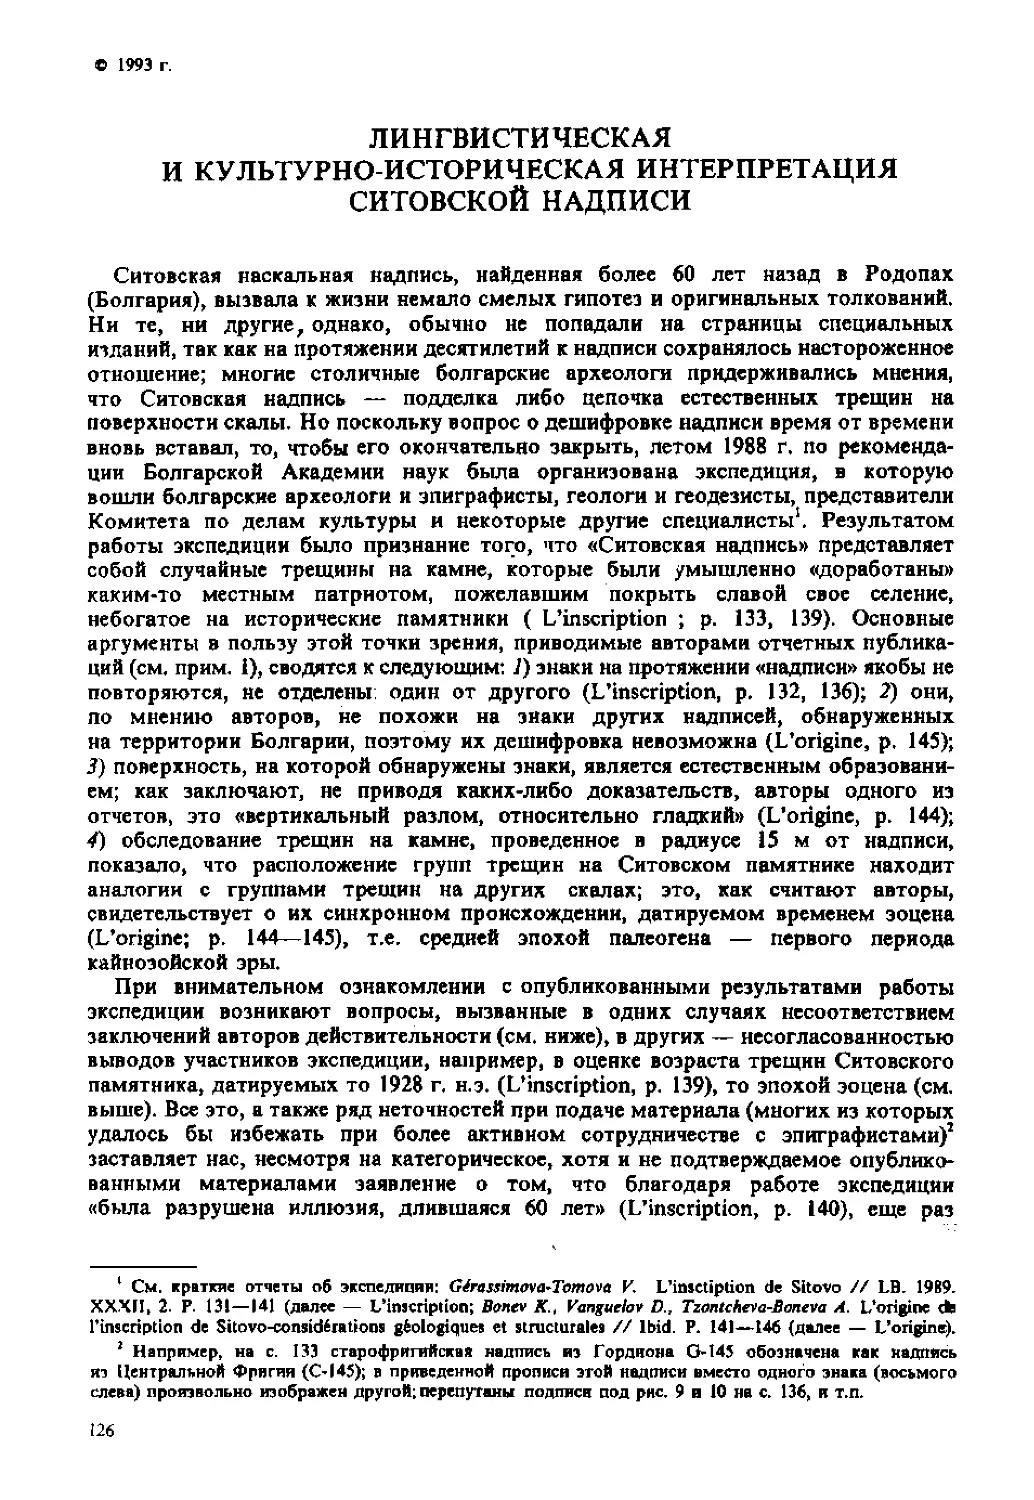 ﻿Лингвистическая и культурно - историческая интерпретация Ситовской надписи. Л. С. Баюн, В. Э. Оре